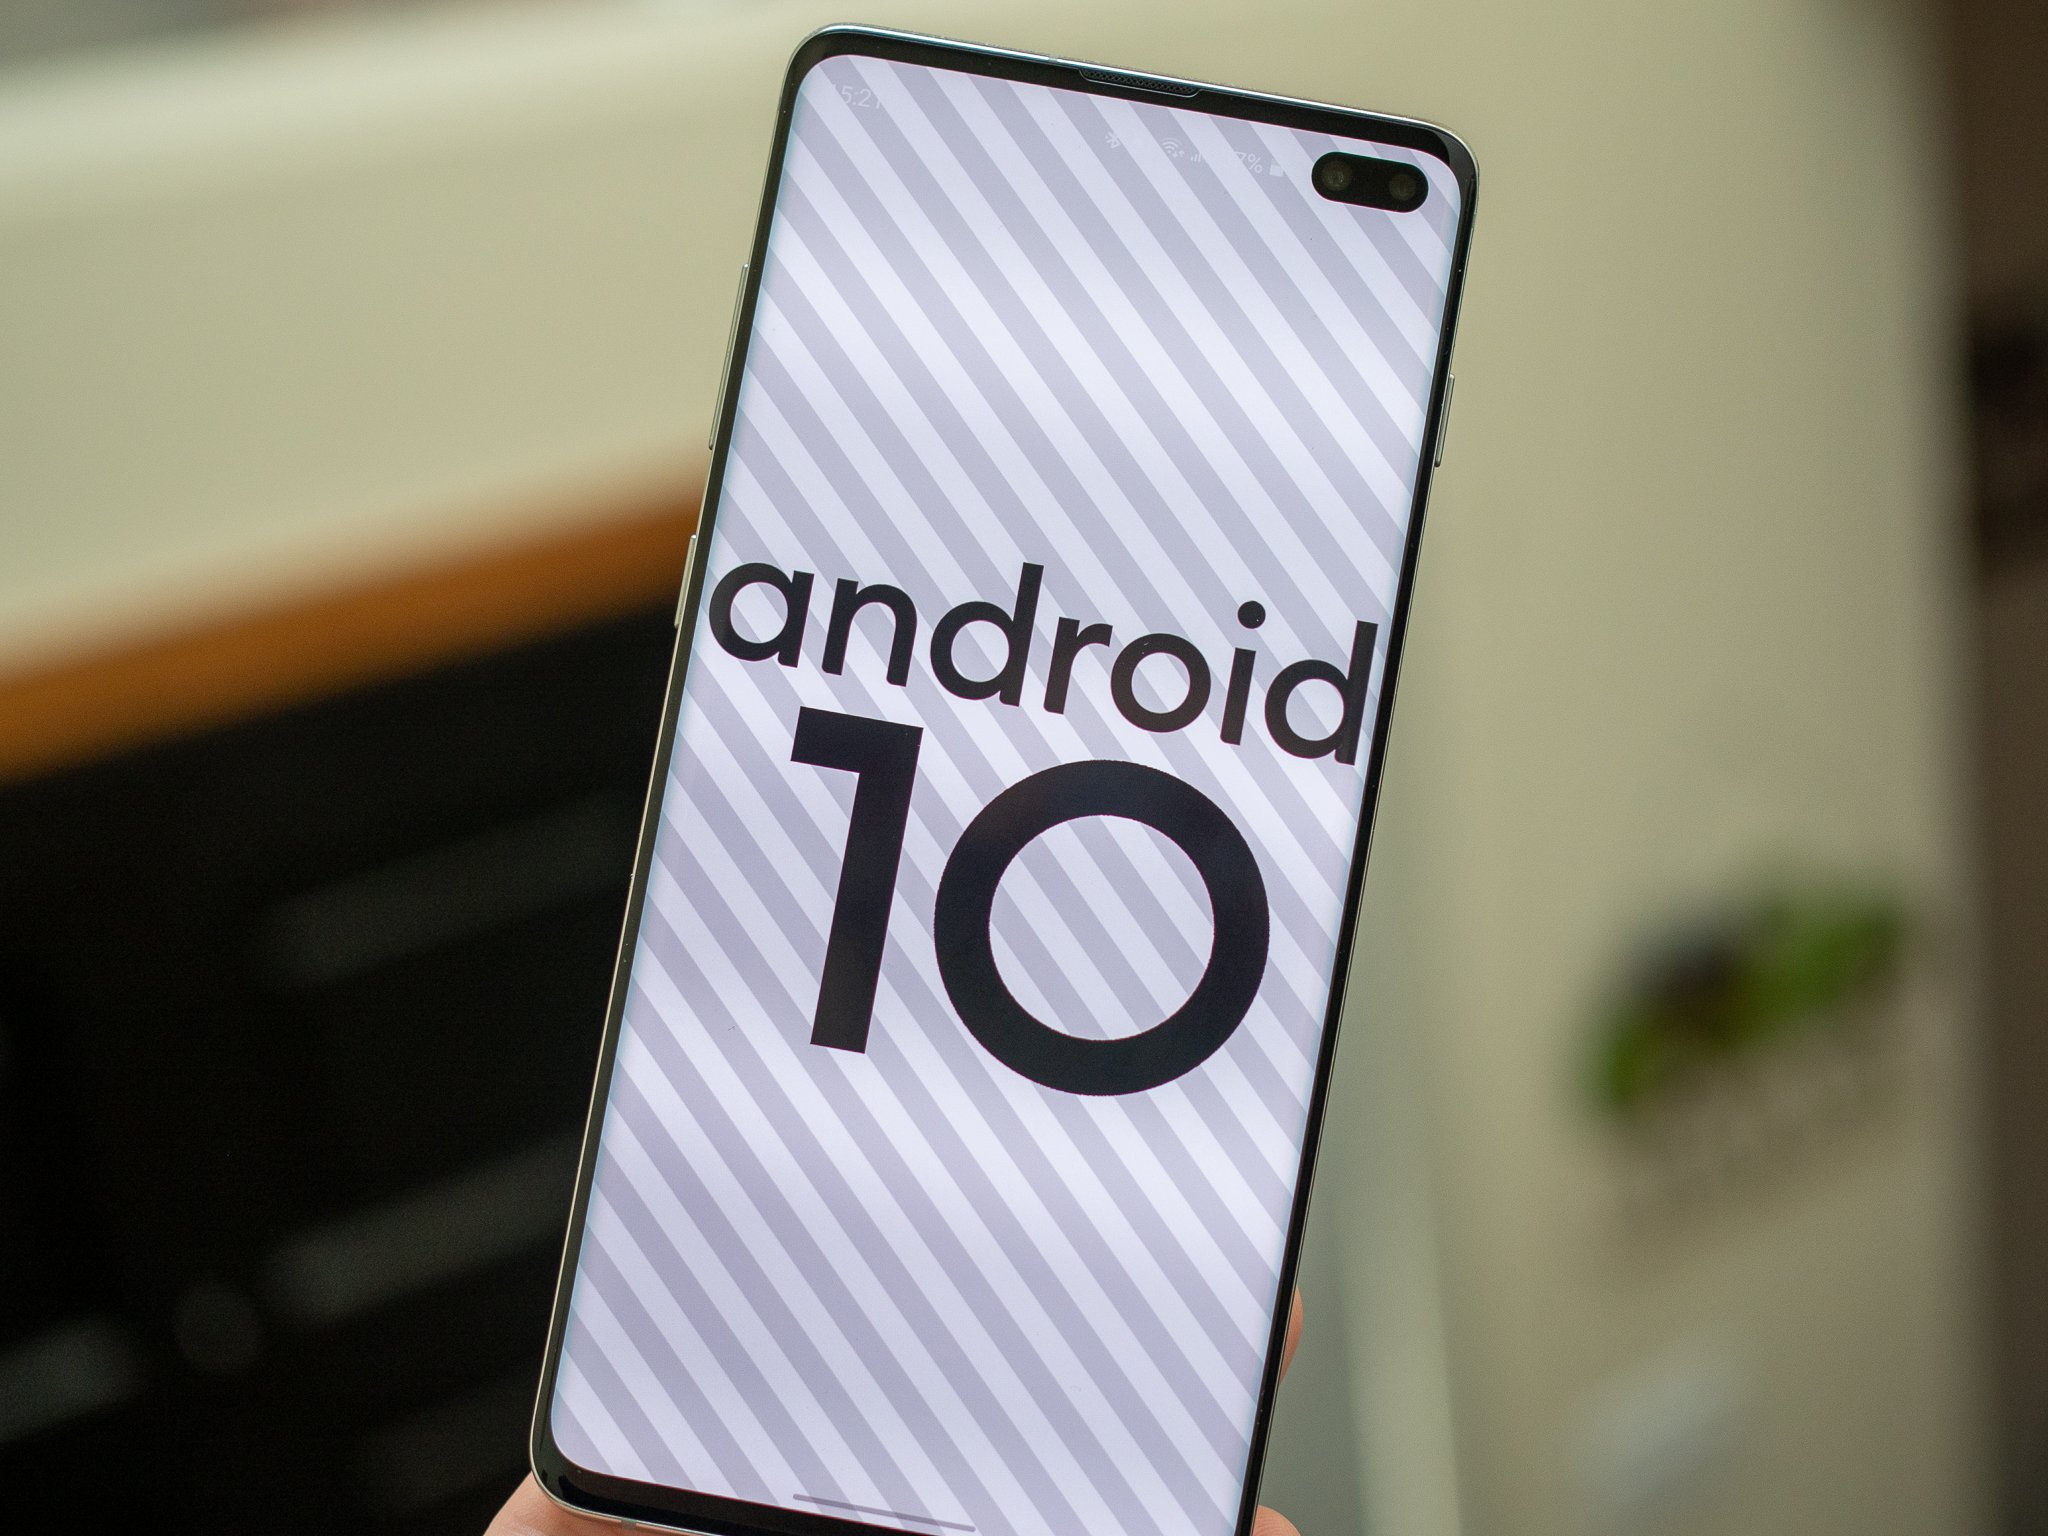 سامسونج تؤخر طرح تحديث One UI 2.0 المستند إلى Android 10 في الهند بسبب COVID-19 127